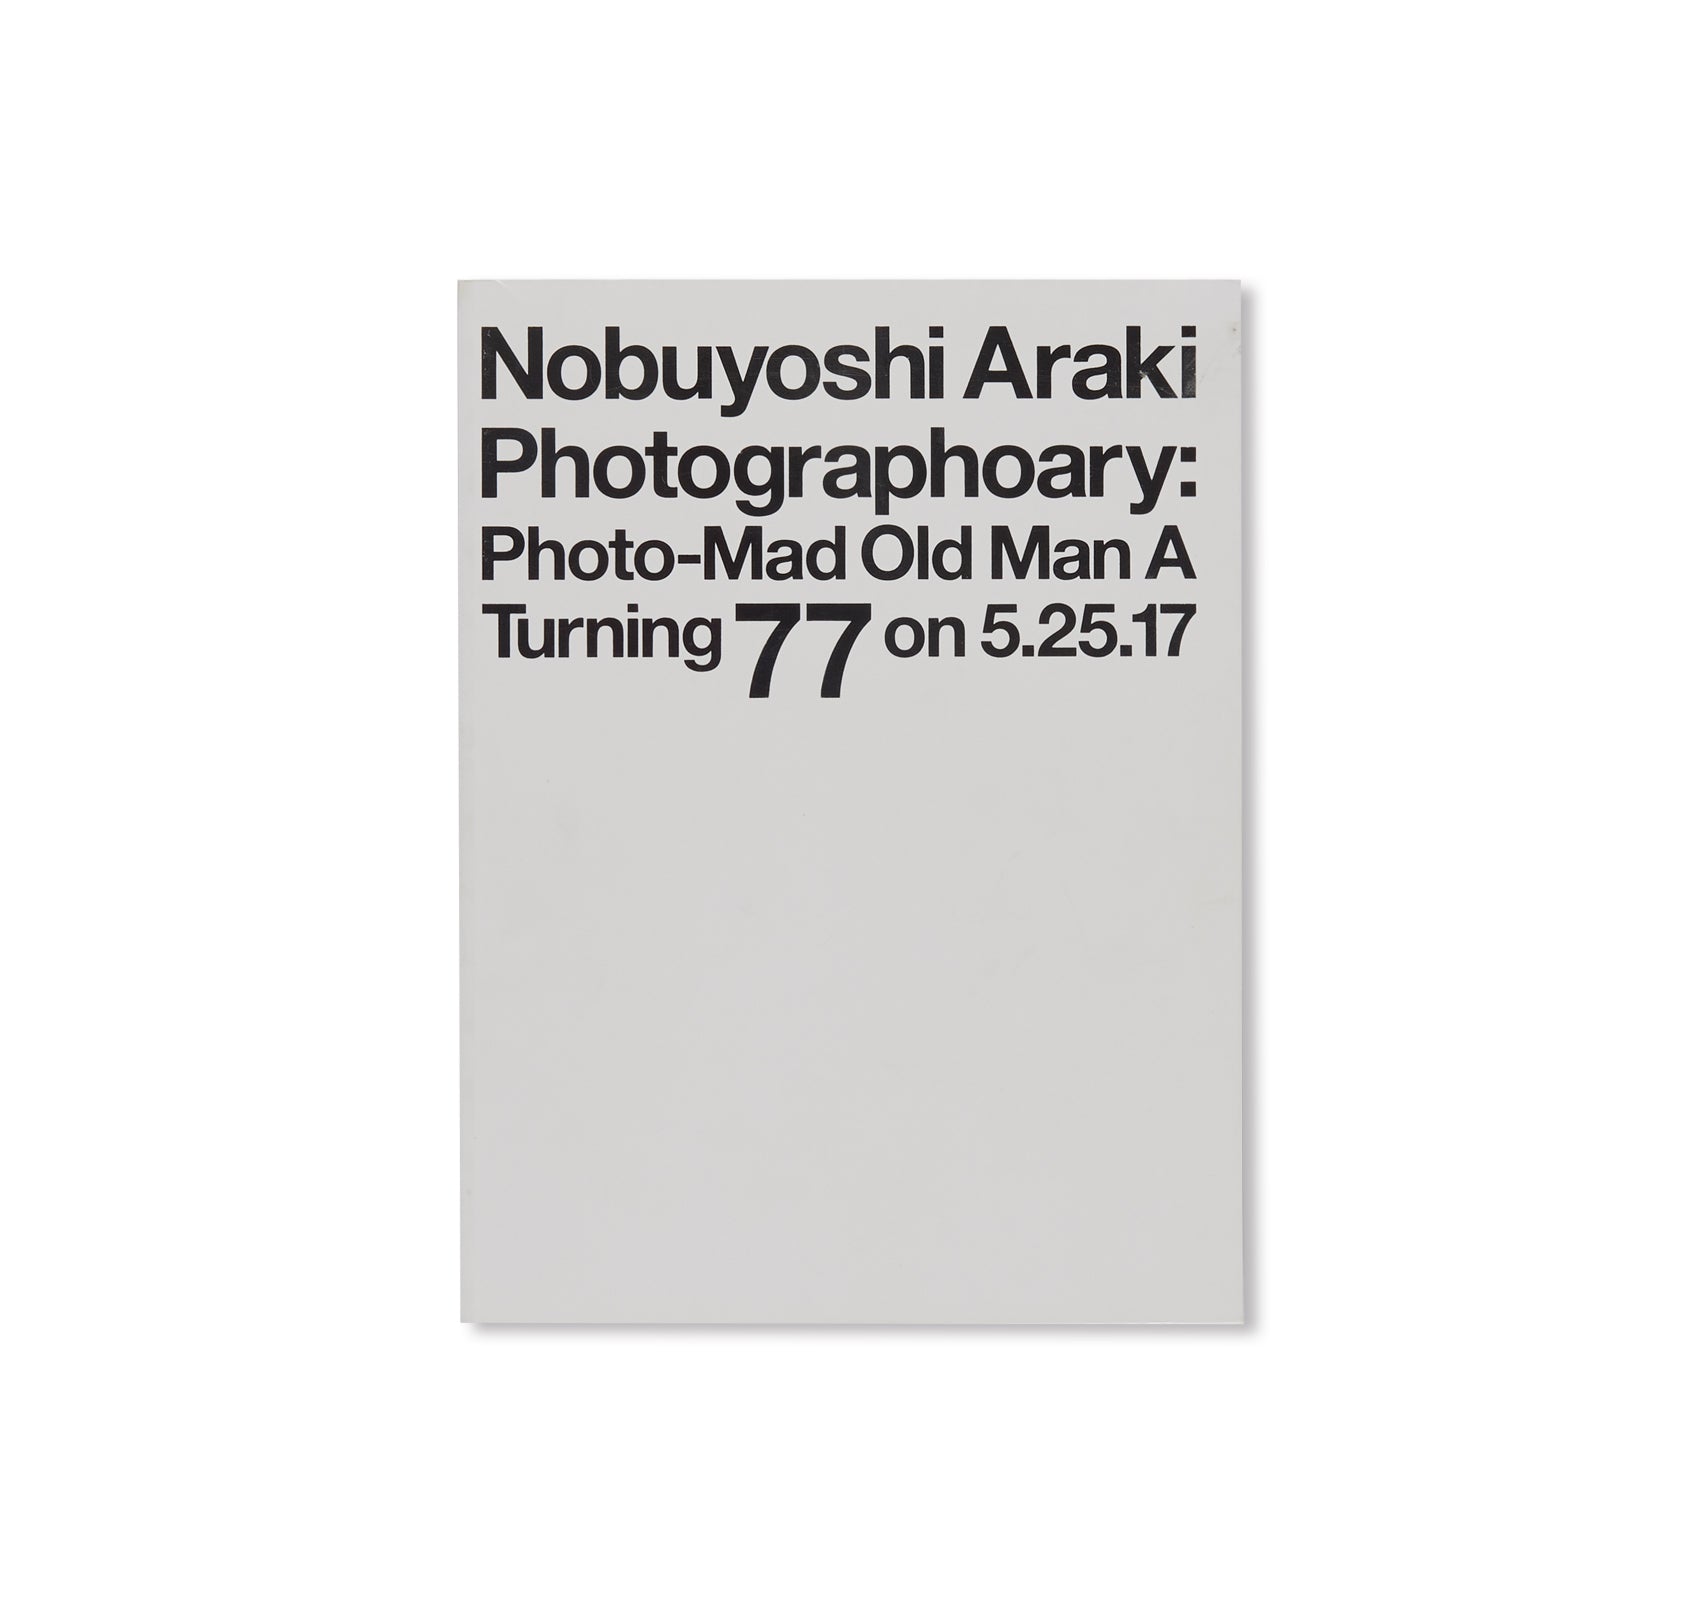 PHOTOGRAPHOARY: PHOTO-MAD OLD MAN A TURNING 77 ON 5.25.17 by Nobuyoshi Araki